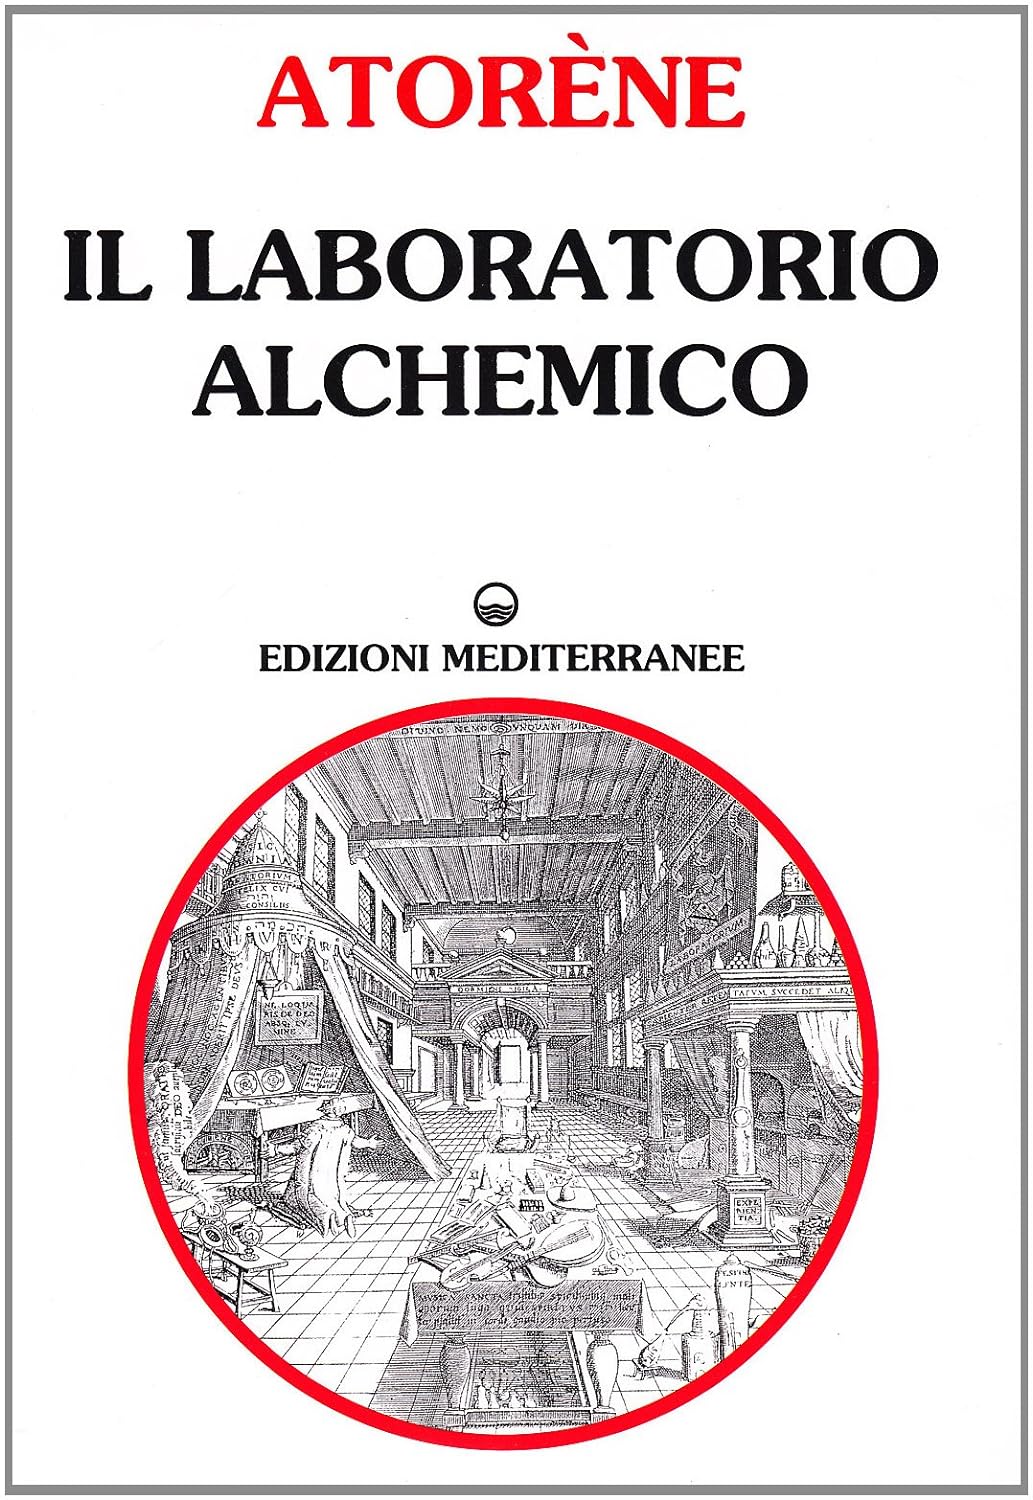 Il Laboratorio Alchemico - Atoréne